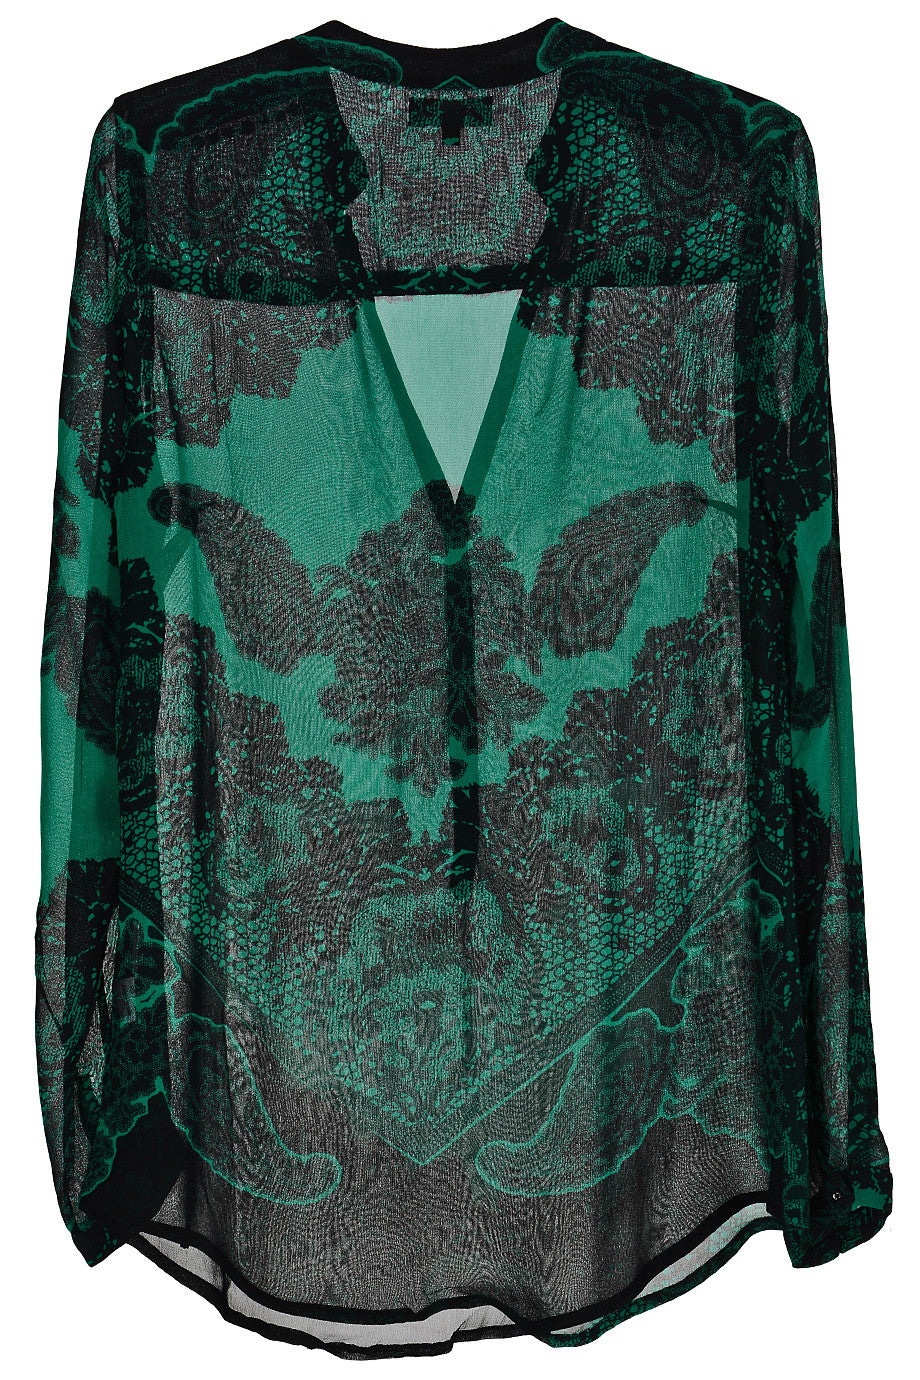 Πράσινη Βραδινή Μπλούζα με Λαχούρια | Γυναικεία Ρούχα